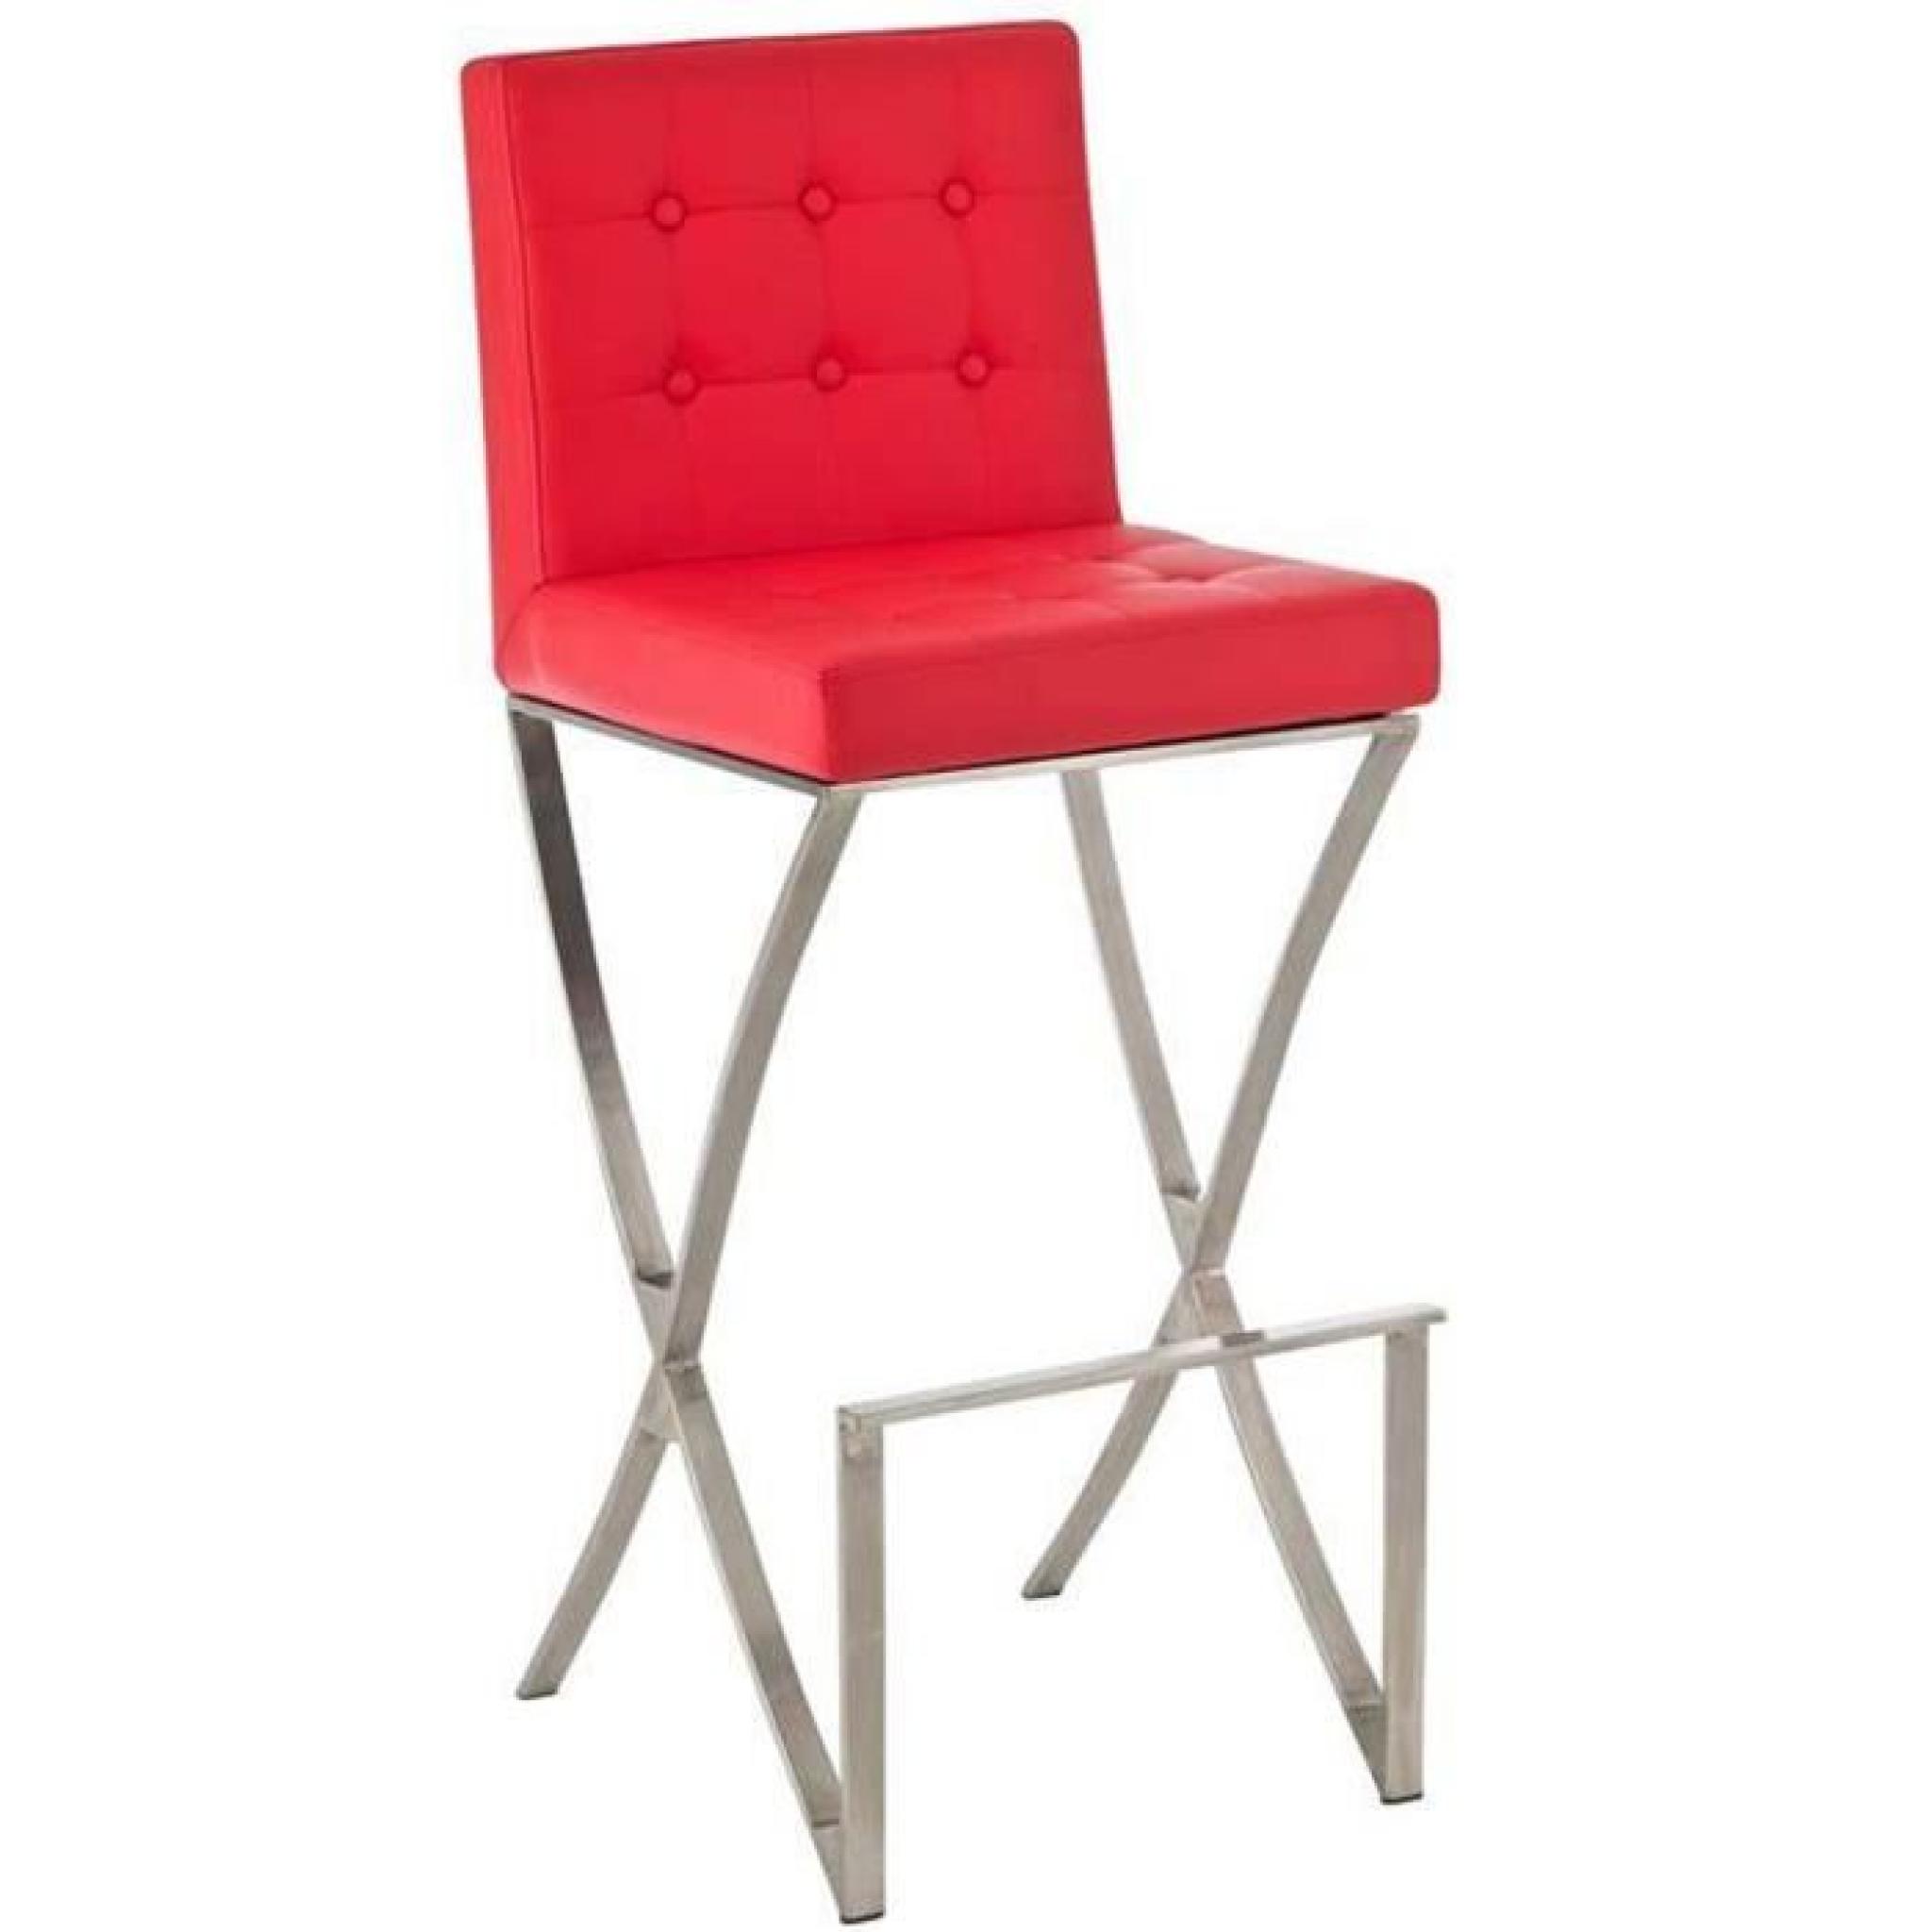 Chaise de bar en chrome et couverture en cuir de couleur rouge, H 115 x L 45 x P 53 cm